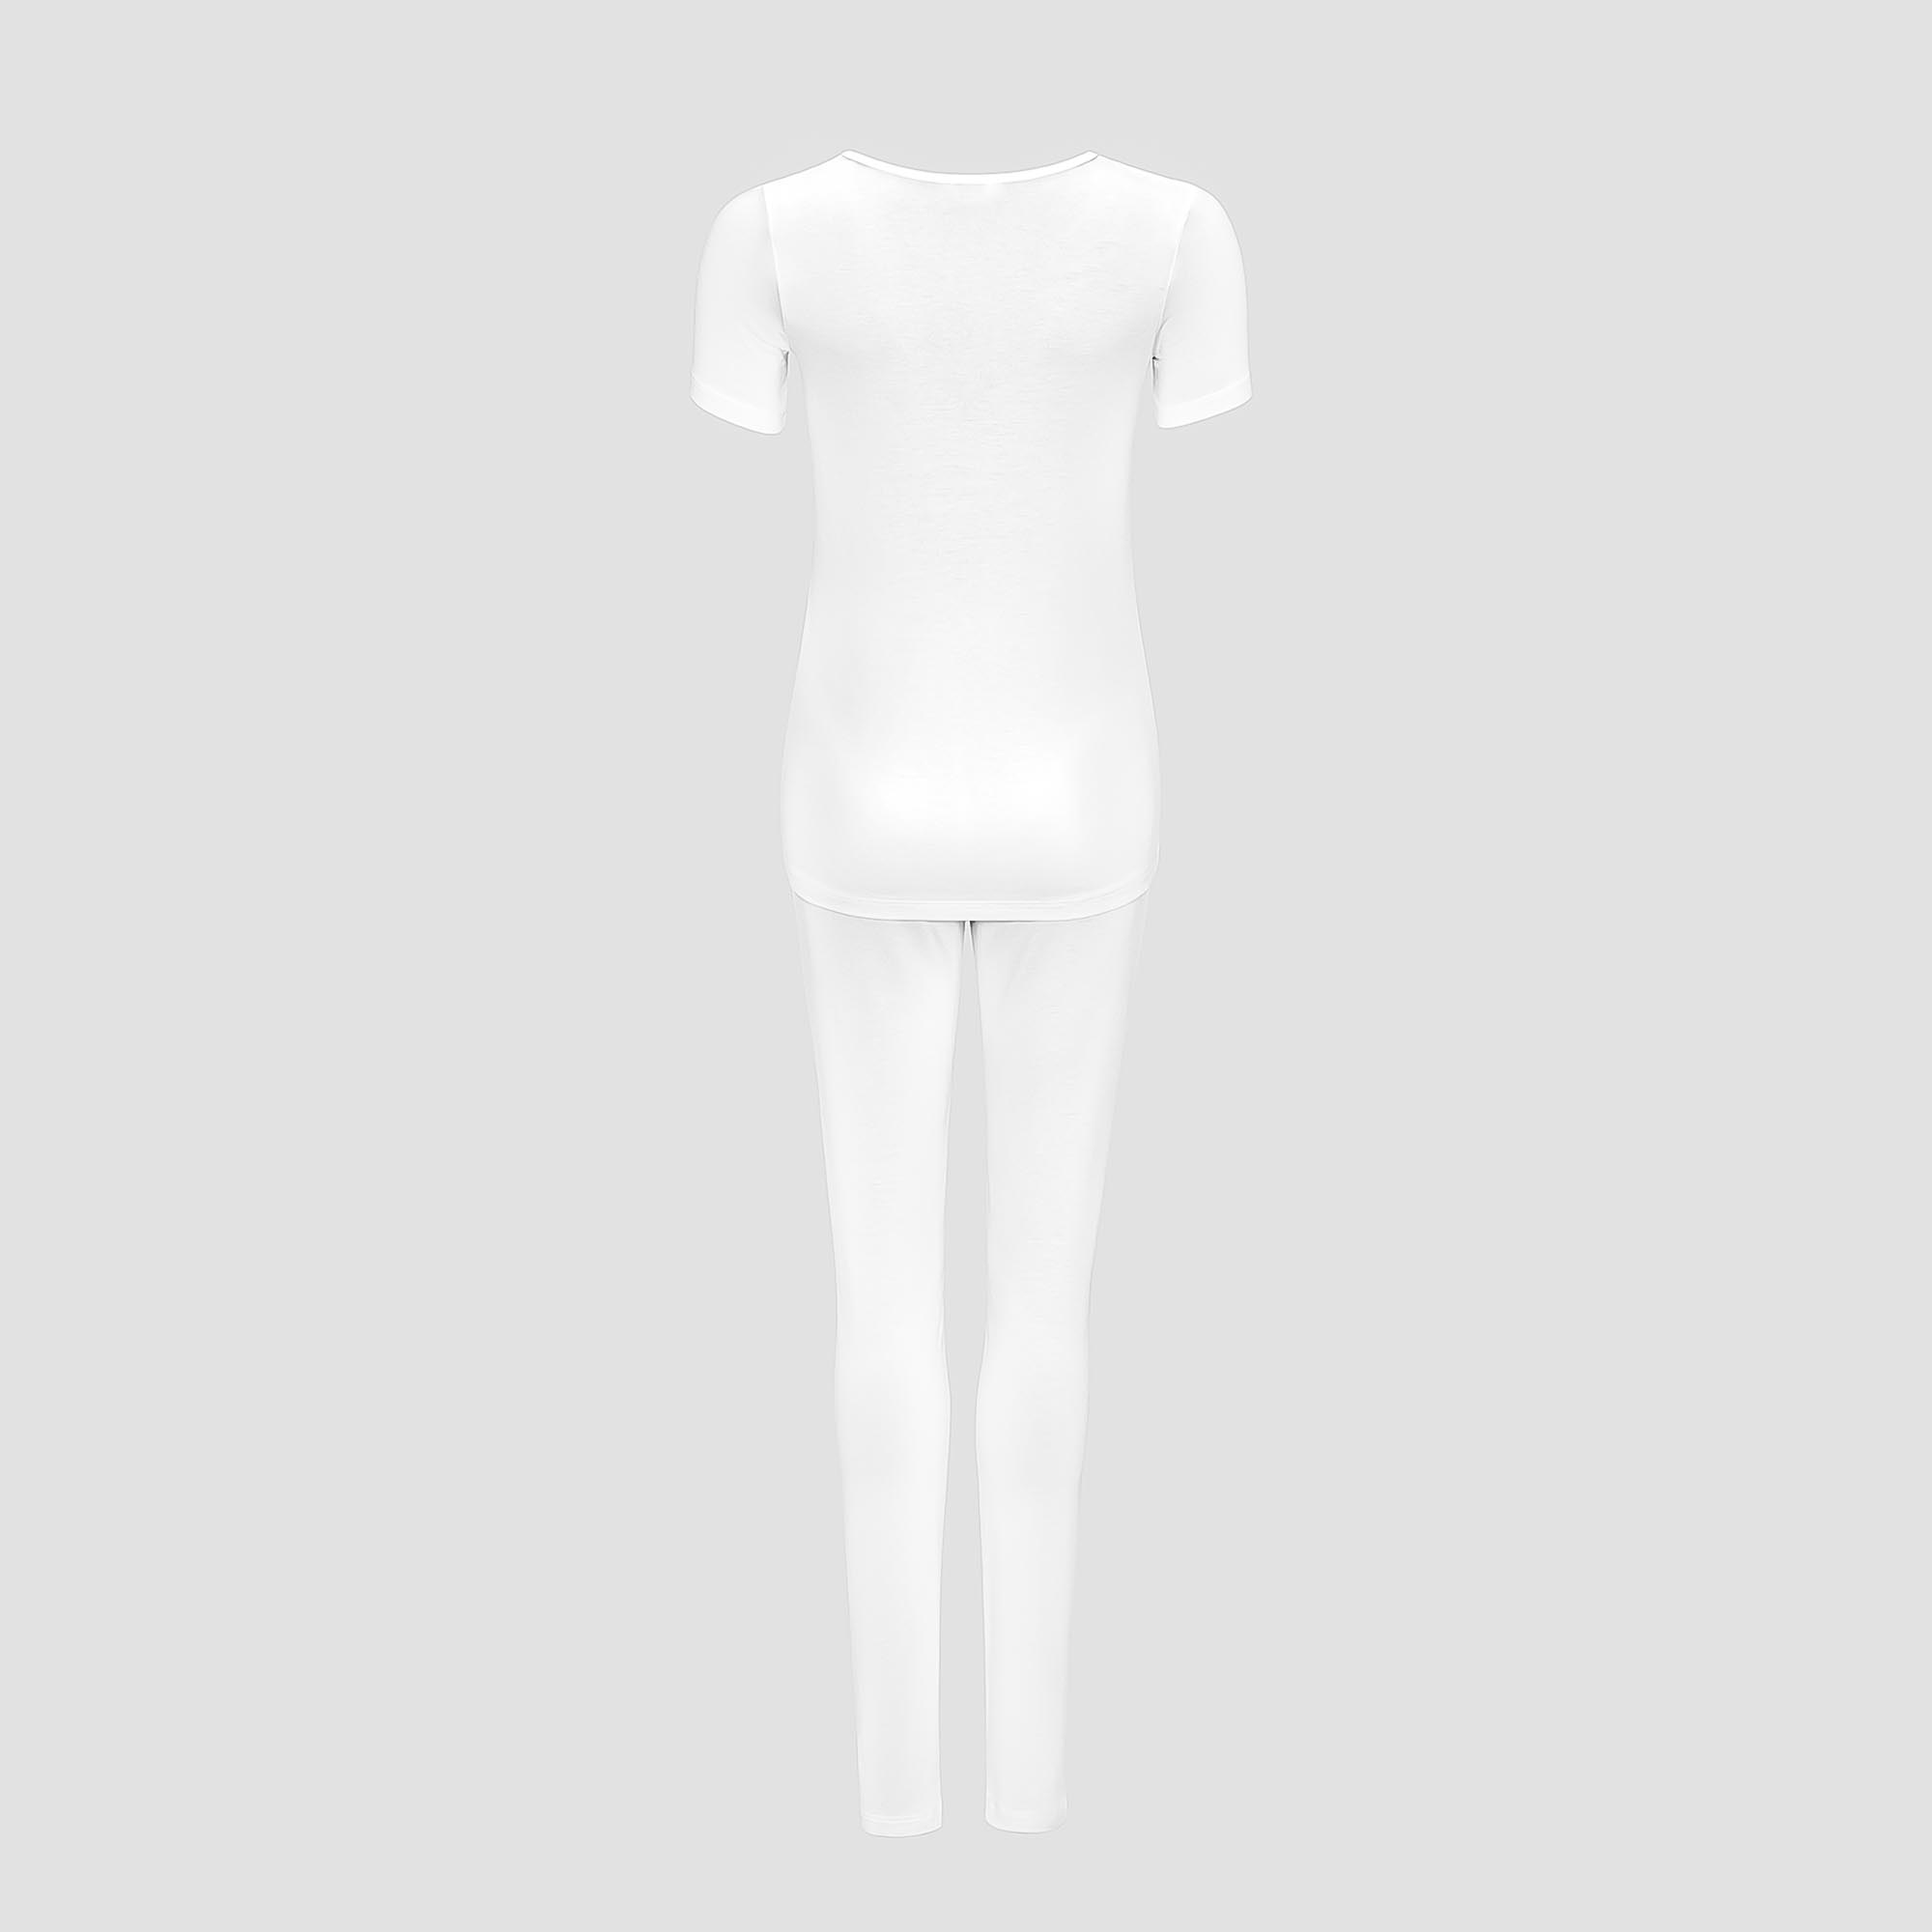 Пижама Togas Ингелла белая женская XL(50) 2 предмета, цвет белый, размер XL(50) - фото 3